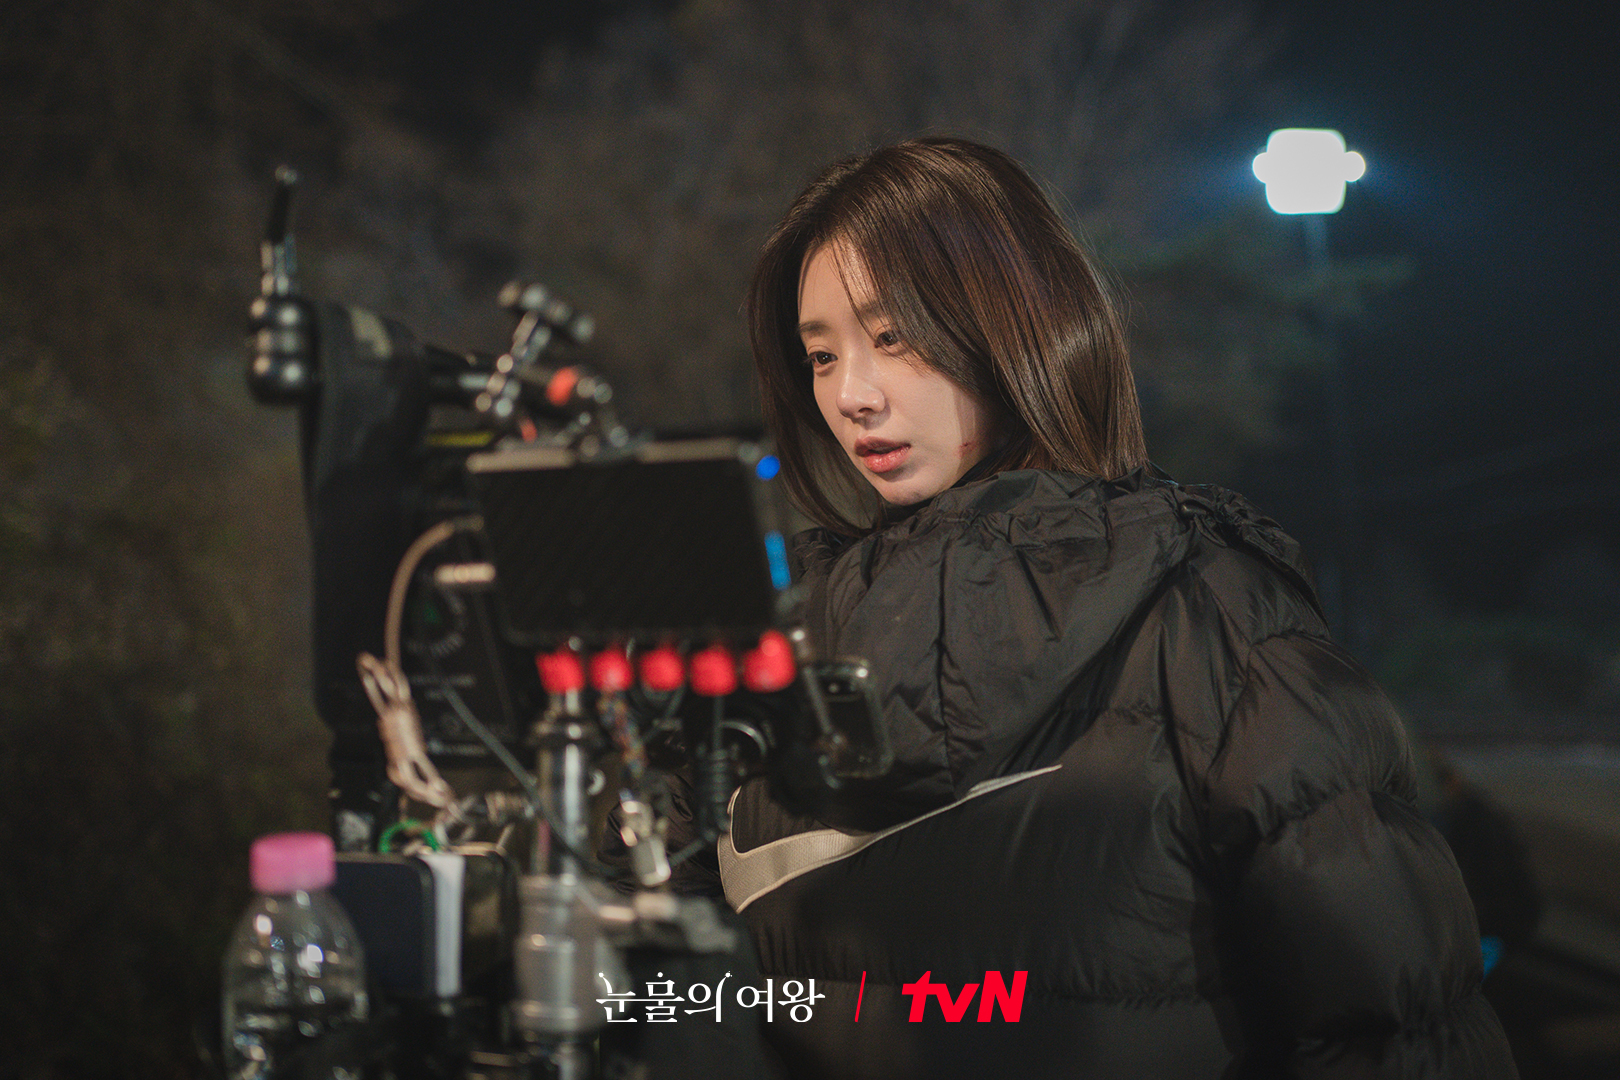 Suốt 16 tập Nữ hoàng nước mắt, Lee Joo Bin thể hiện trọn vẹn nhiều thay đổi nội tâm bất ngờ của nhân vật Cheon Da Hye. Với fan Việt Nam, nữ diễn viên 35 tuổi còn chiếm cảm tình với loạt vlog và hình ảnh về chuyến du lịch đến Việt Nam vào năm 2018